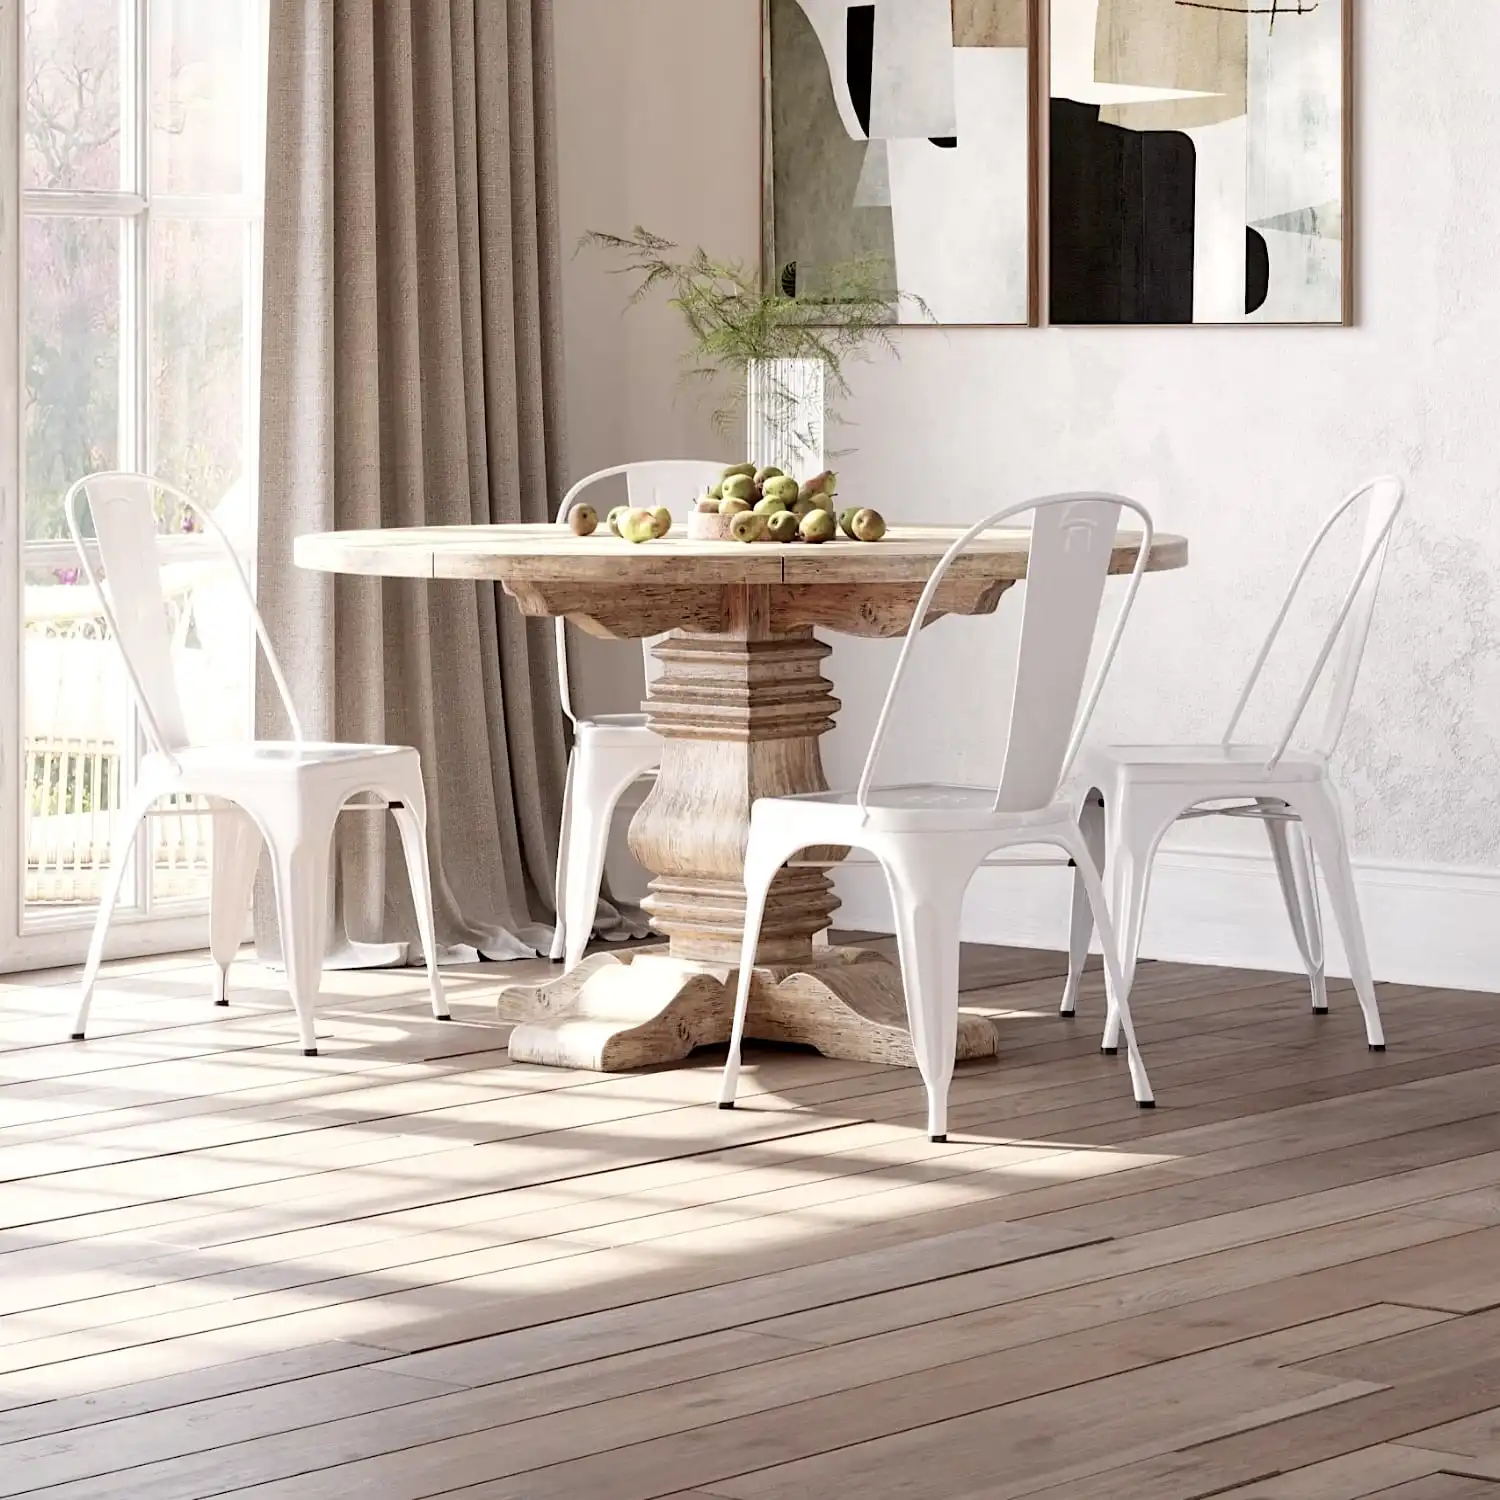  Une salle à manger avec une table rustique et des chaises blanches. 